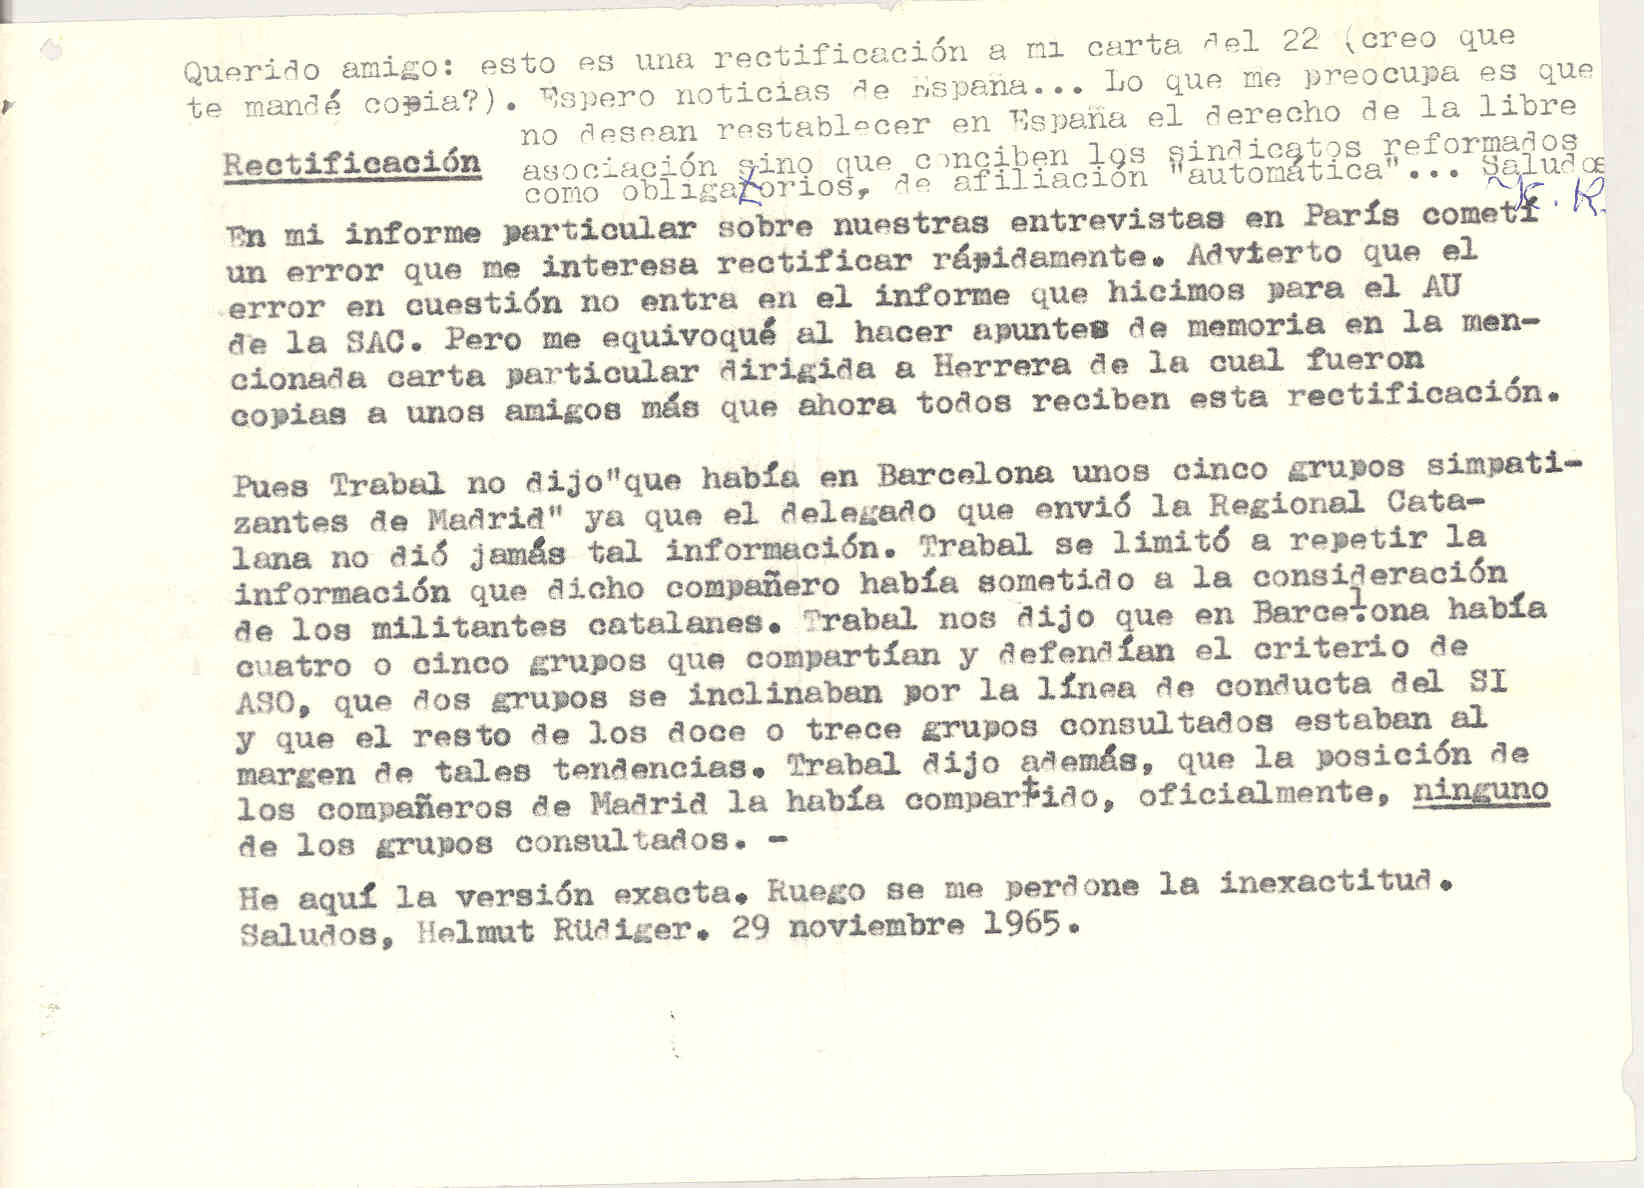 Rectificación de la carta de Helmut Rüdiger que envió a Herrera explicando su preocupación porque no desean restablecer en España el derecho de la libre asociación